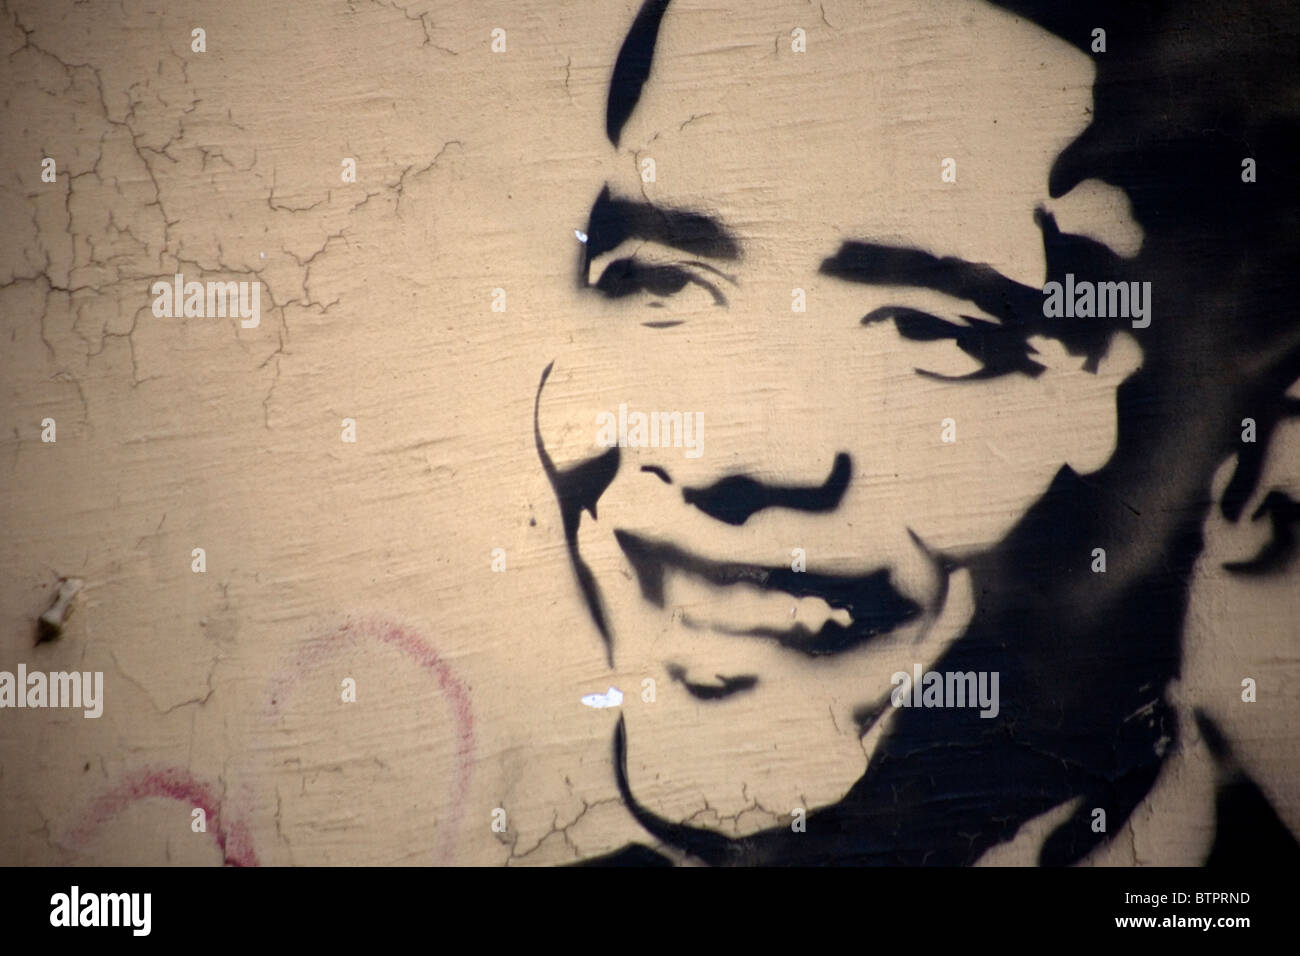 Un graffiti de la rue du président américain Barak Obama est vu dans un mur dans le quartier Coyoacan, Mexico, 30 octobre 2010. Banque D'Images